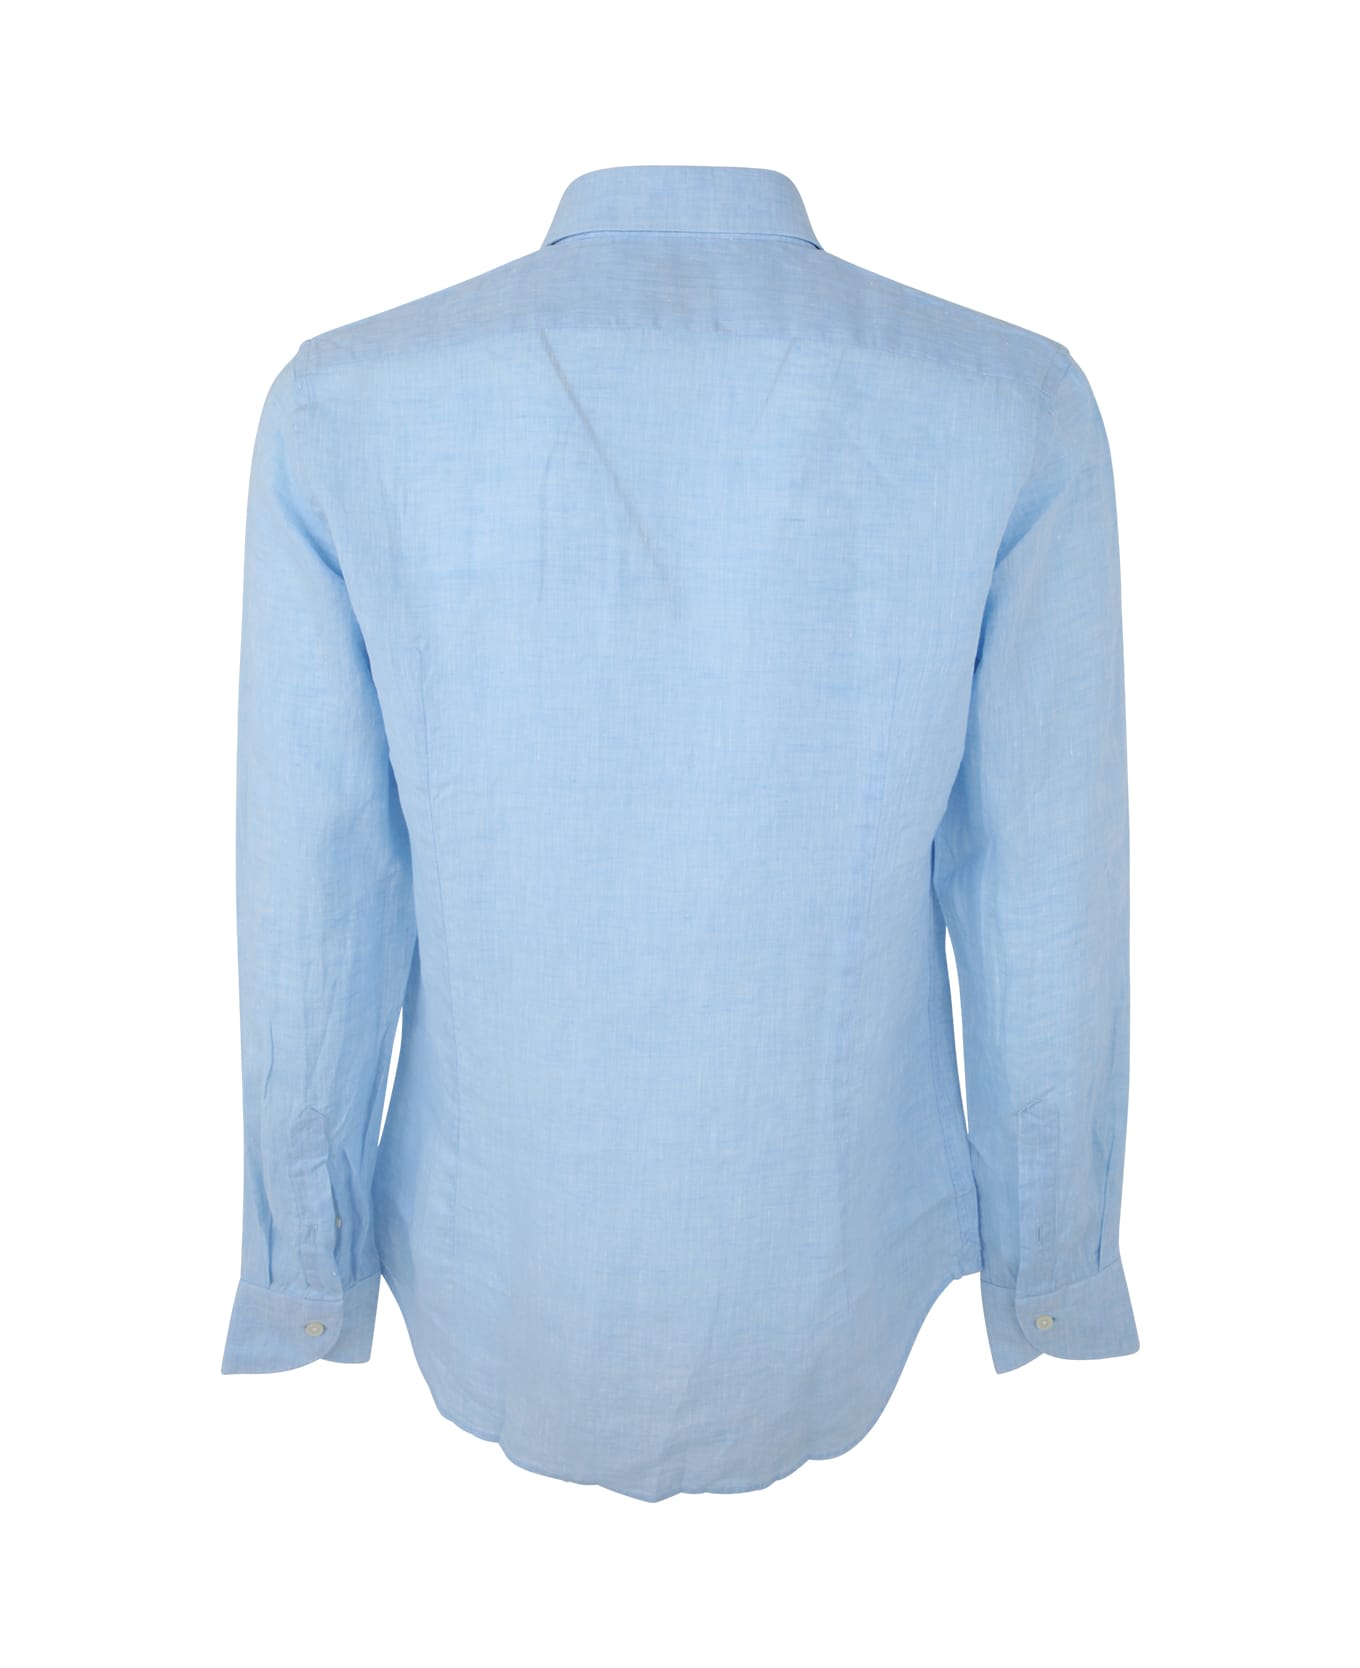 DNL Linen Classic Shirt - Light Blue